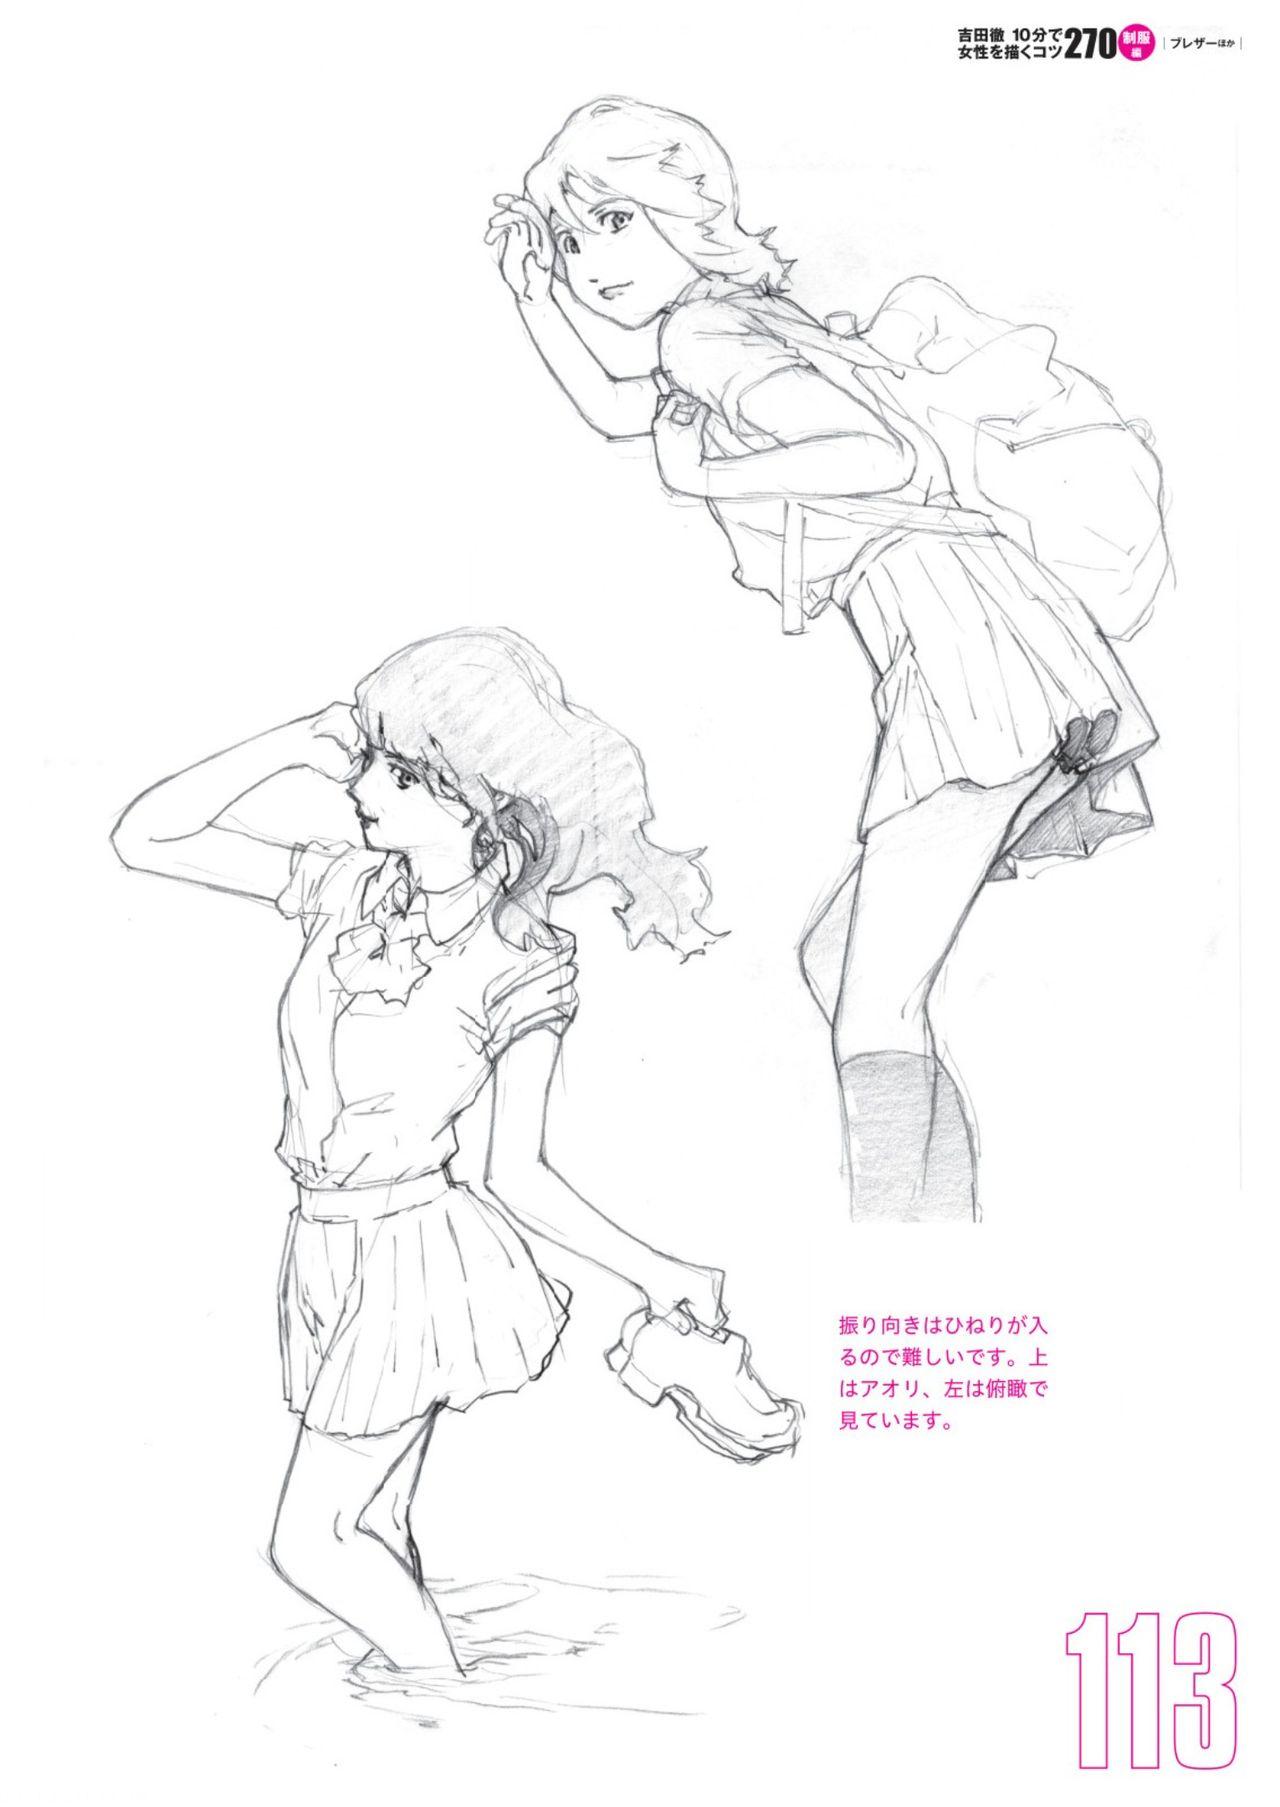 Toru Yoshida Tips for drawing women in 10 minutes 270 Uniforms 114